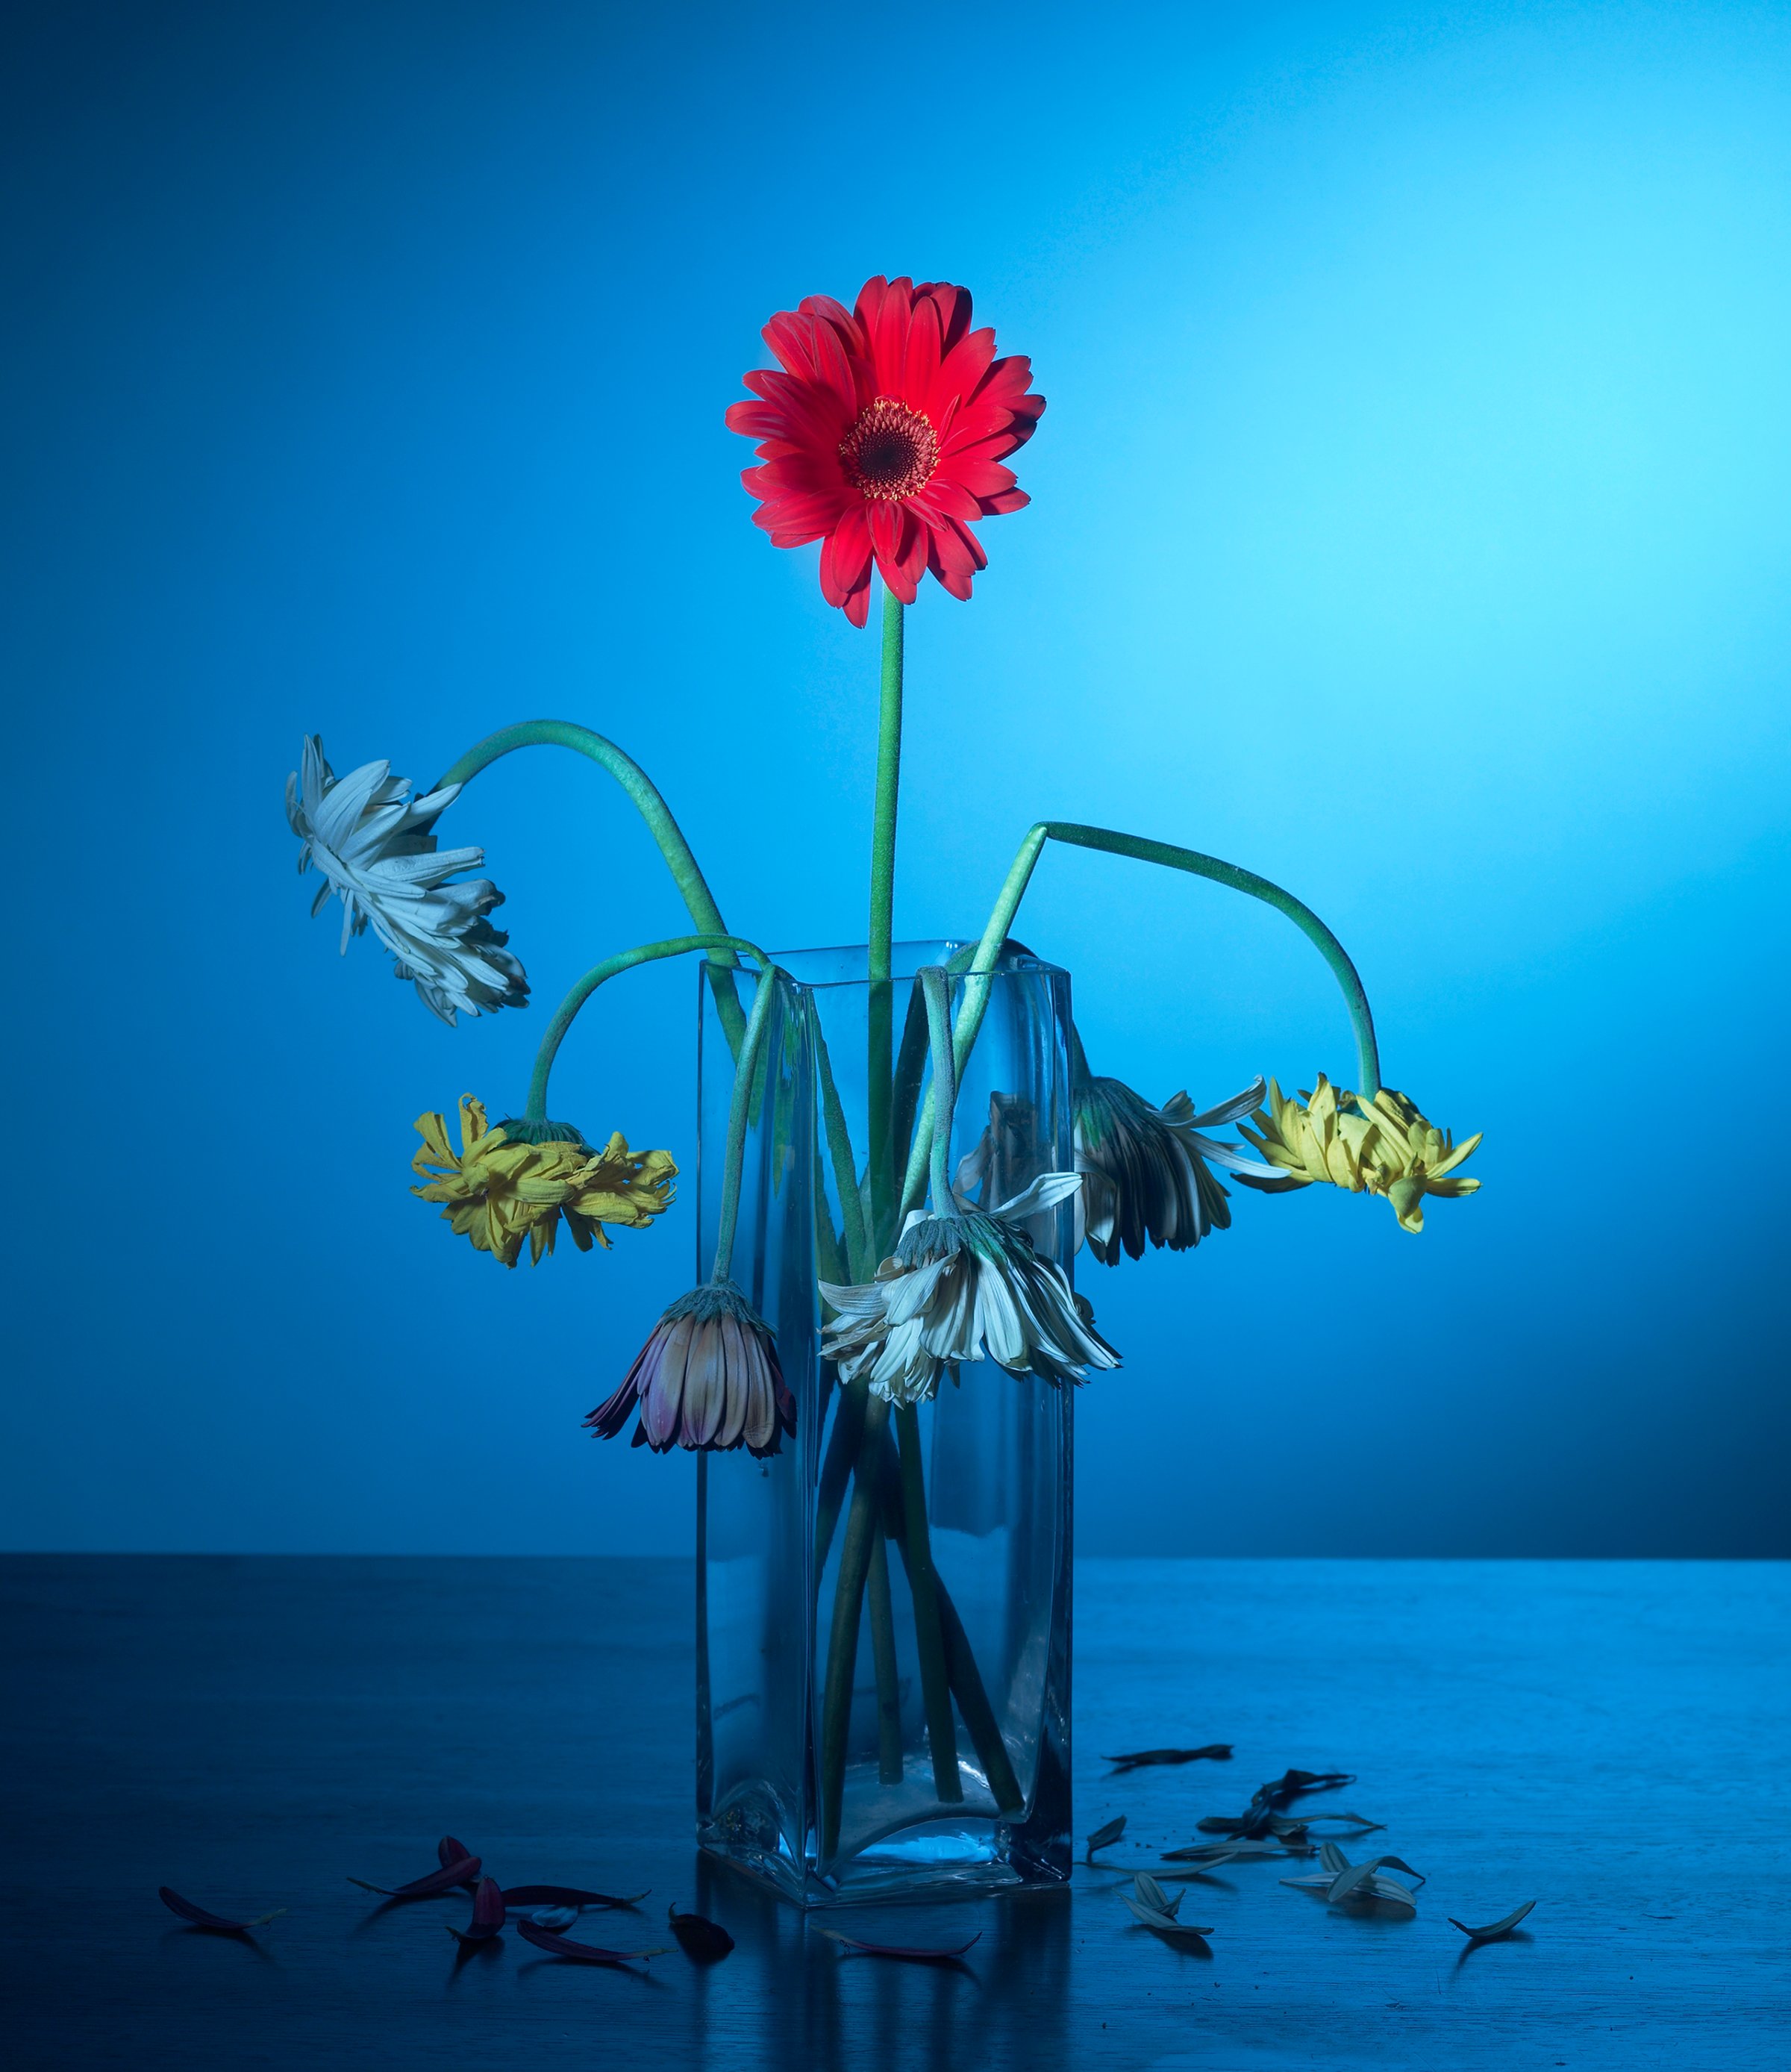 Red flower in glass vase